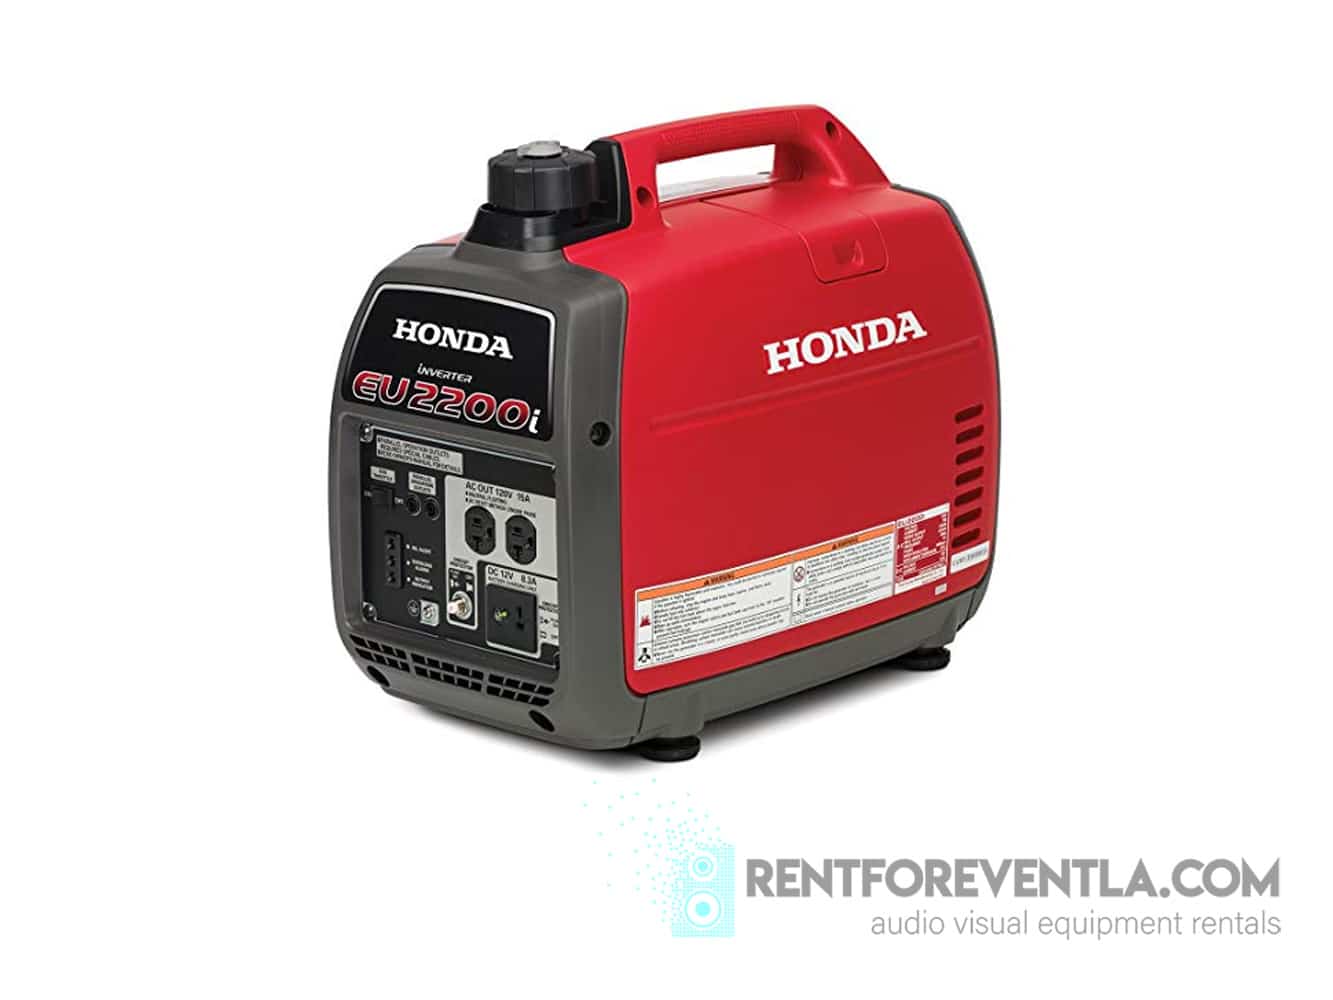 Honda EU2200i 2200W 120-Volt Portable Inverter Generator 